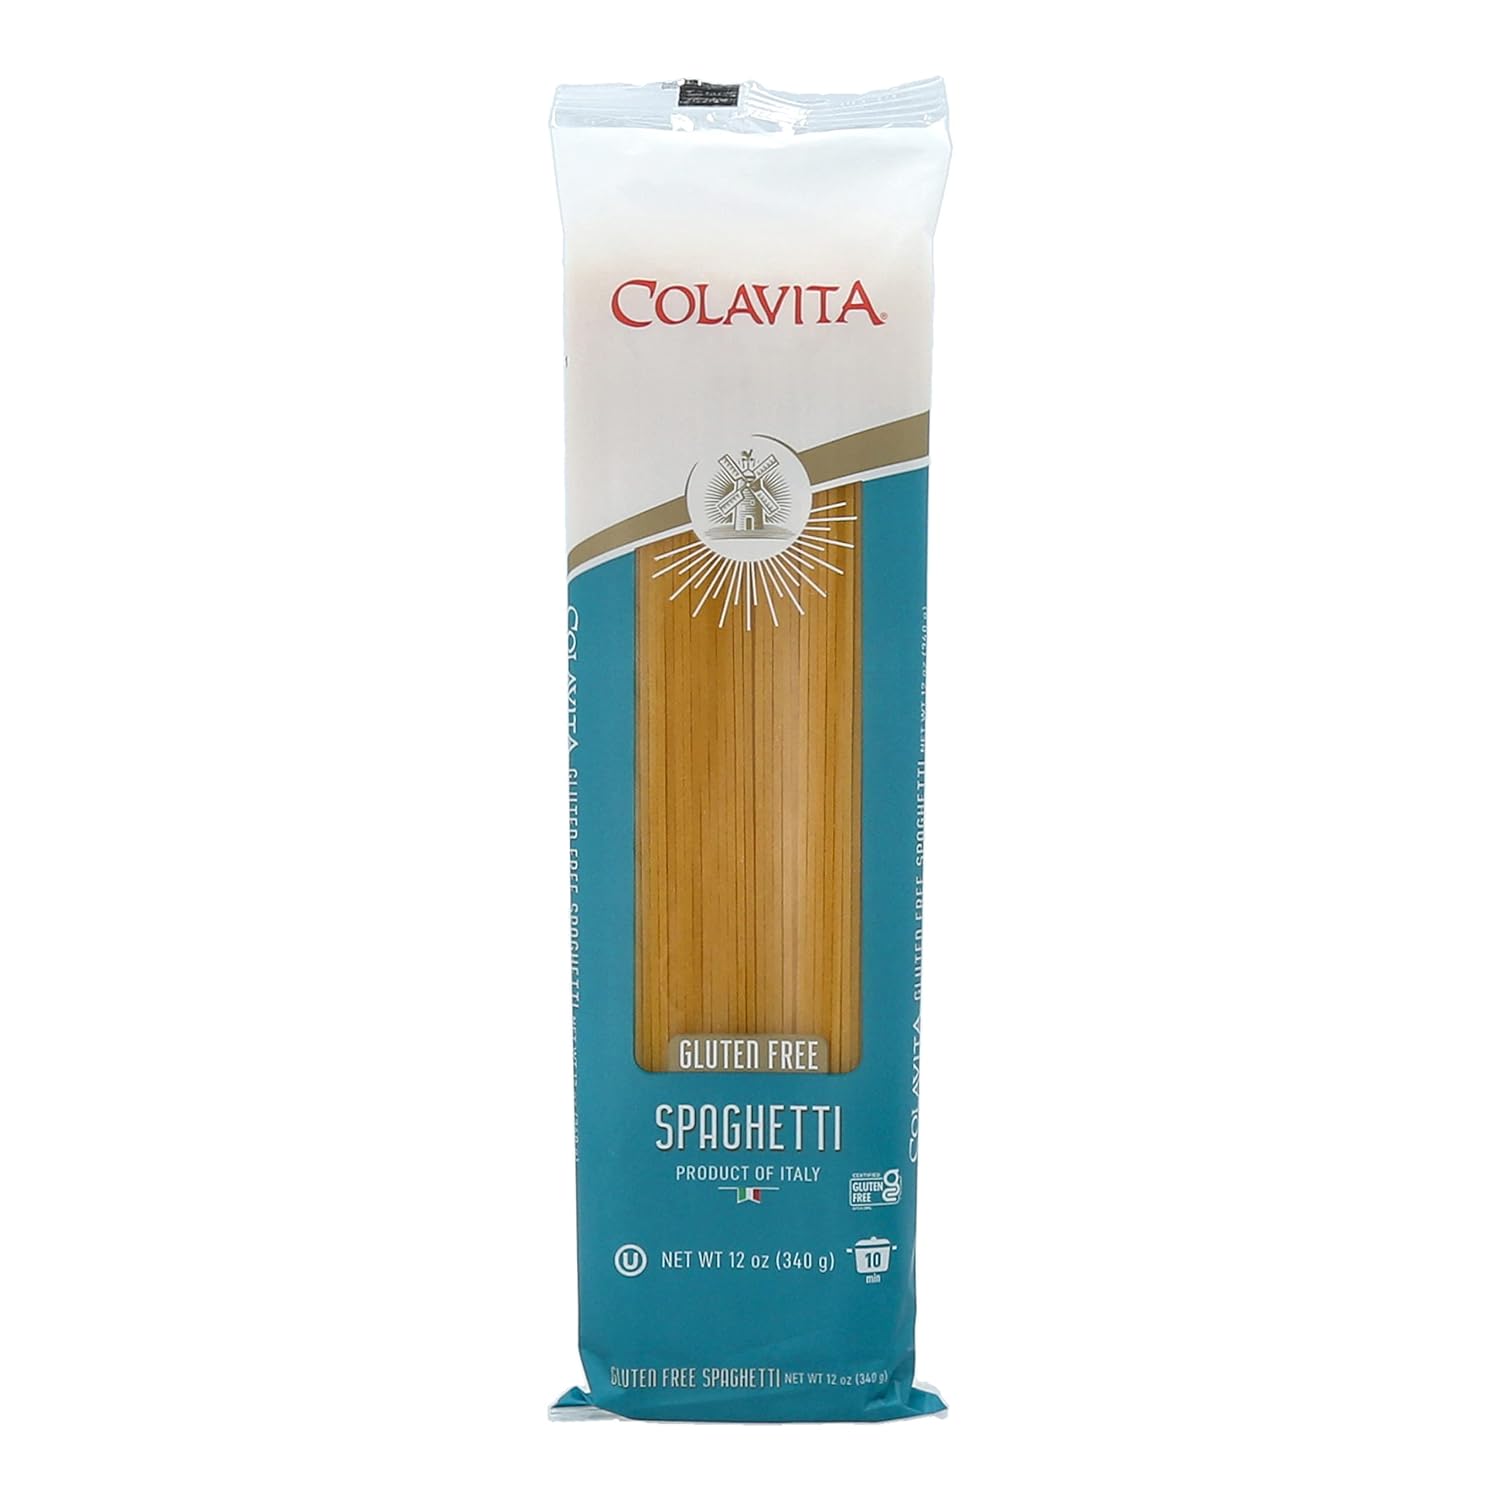 Colavita Pasta - Gluten-Free Spaghetti, 12 oz - Pack of 12